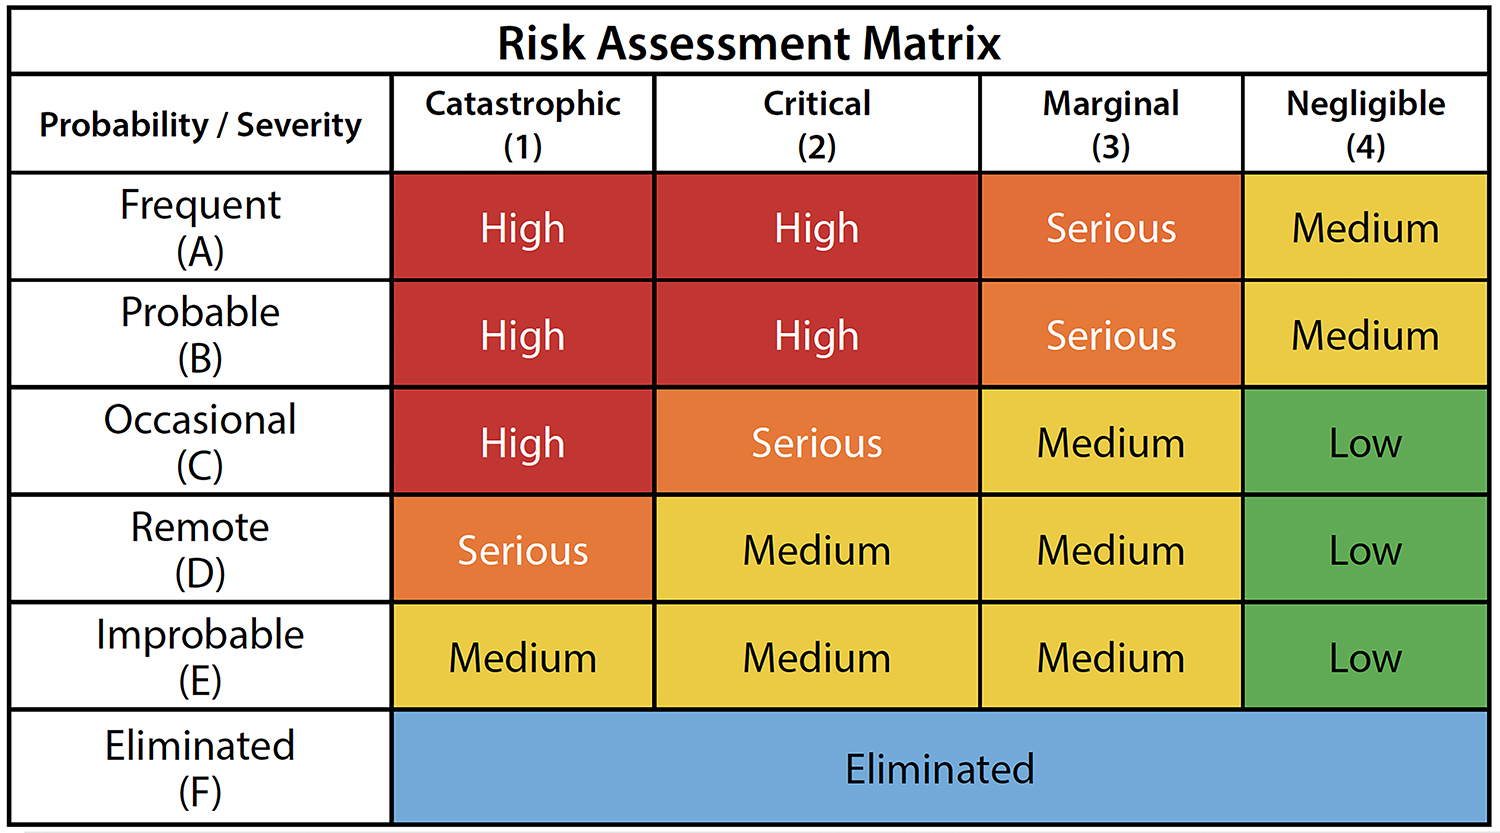 Risk Assessment Matrix_300 DPI (1500x800px)